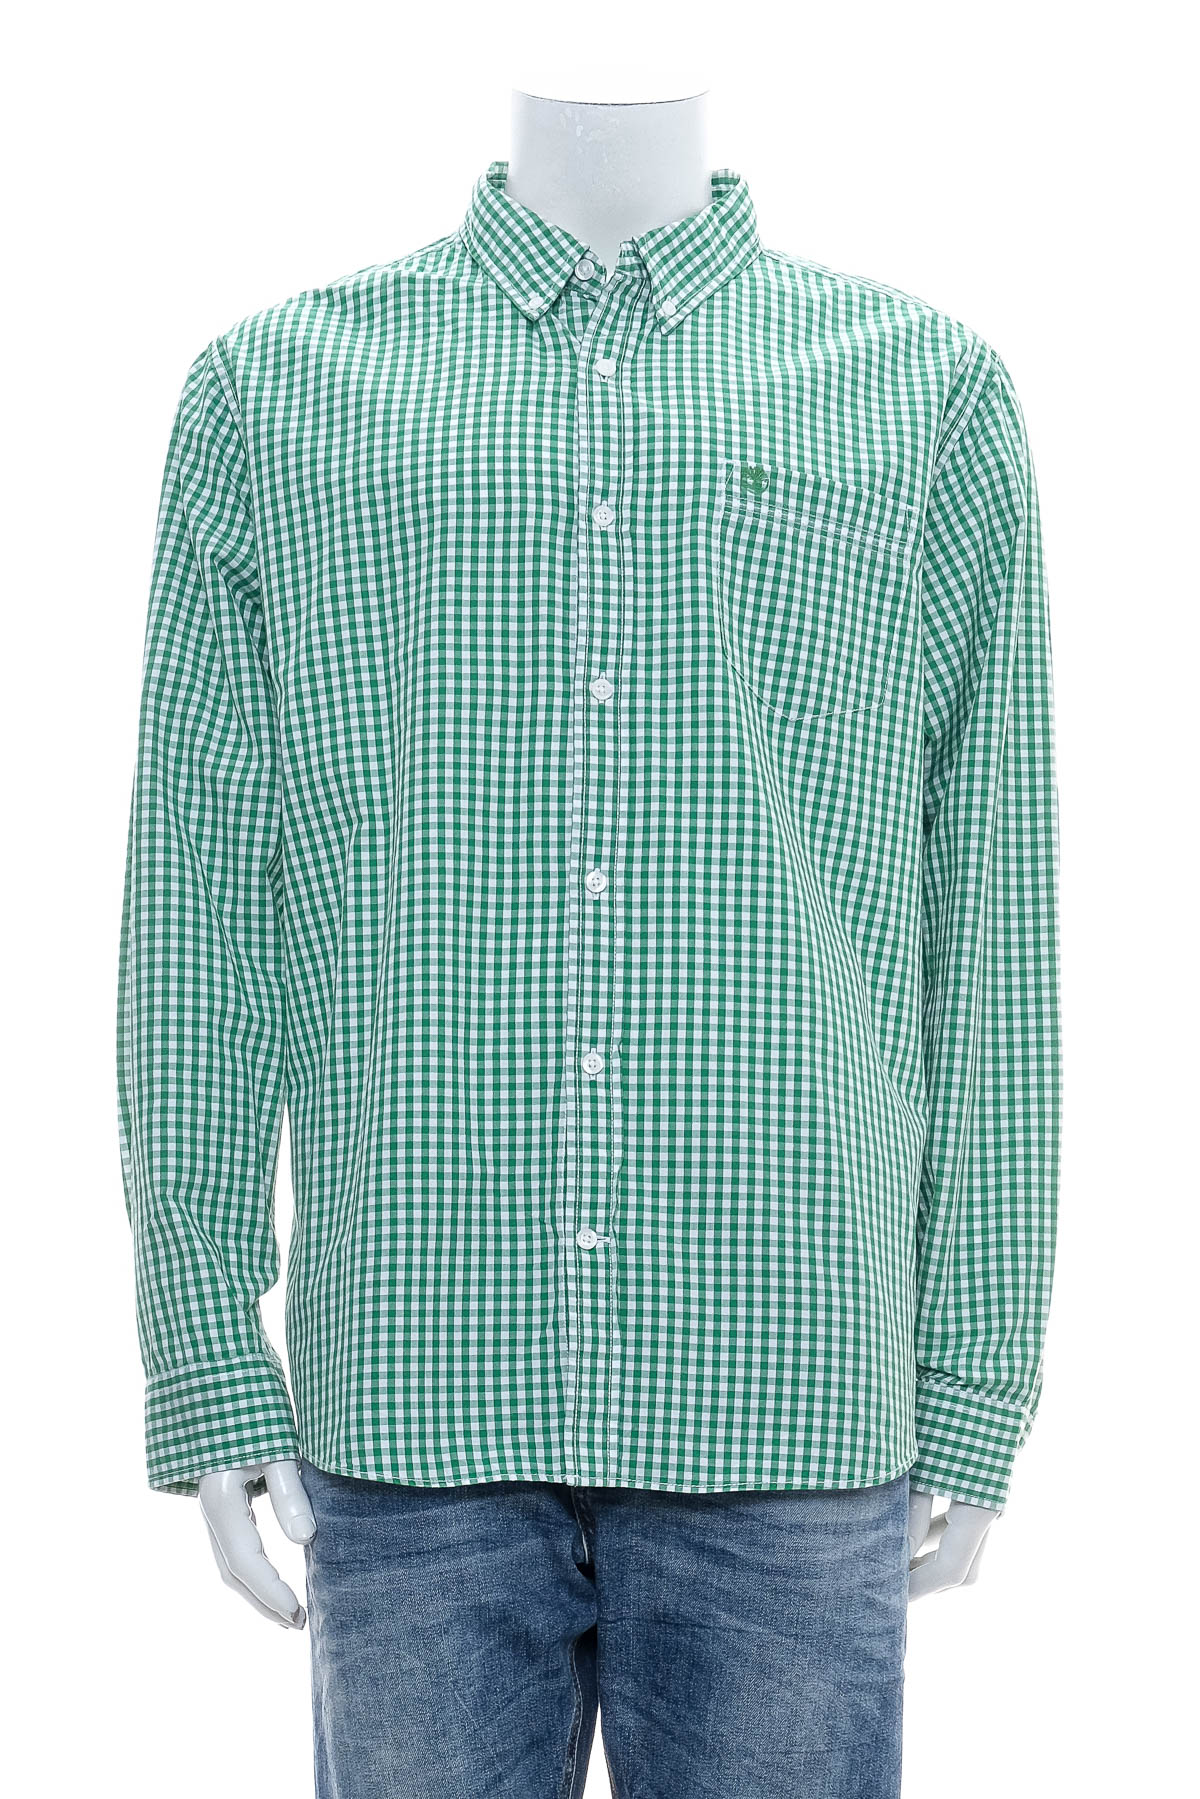 Ανδρικό πουκάμισο - Timberland - 0